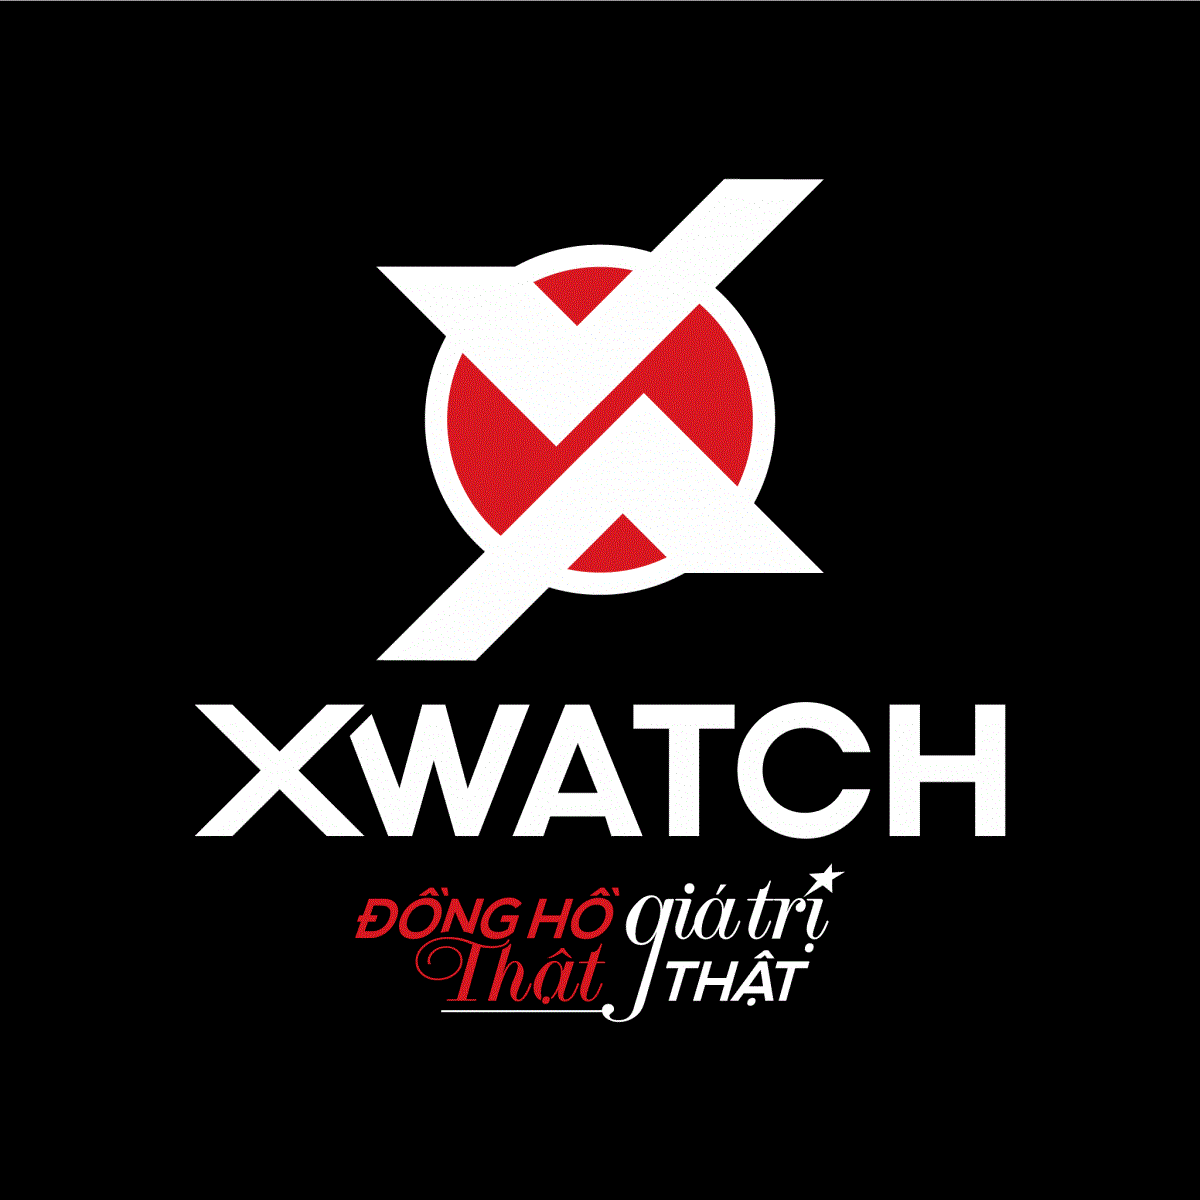 Tin đồn “Xwatch lừa đảo” - Chiêu trò làm giảm uy tín của doanh nghiệp bán đồng hồ chính hãng